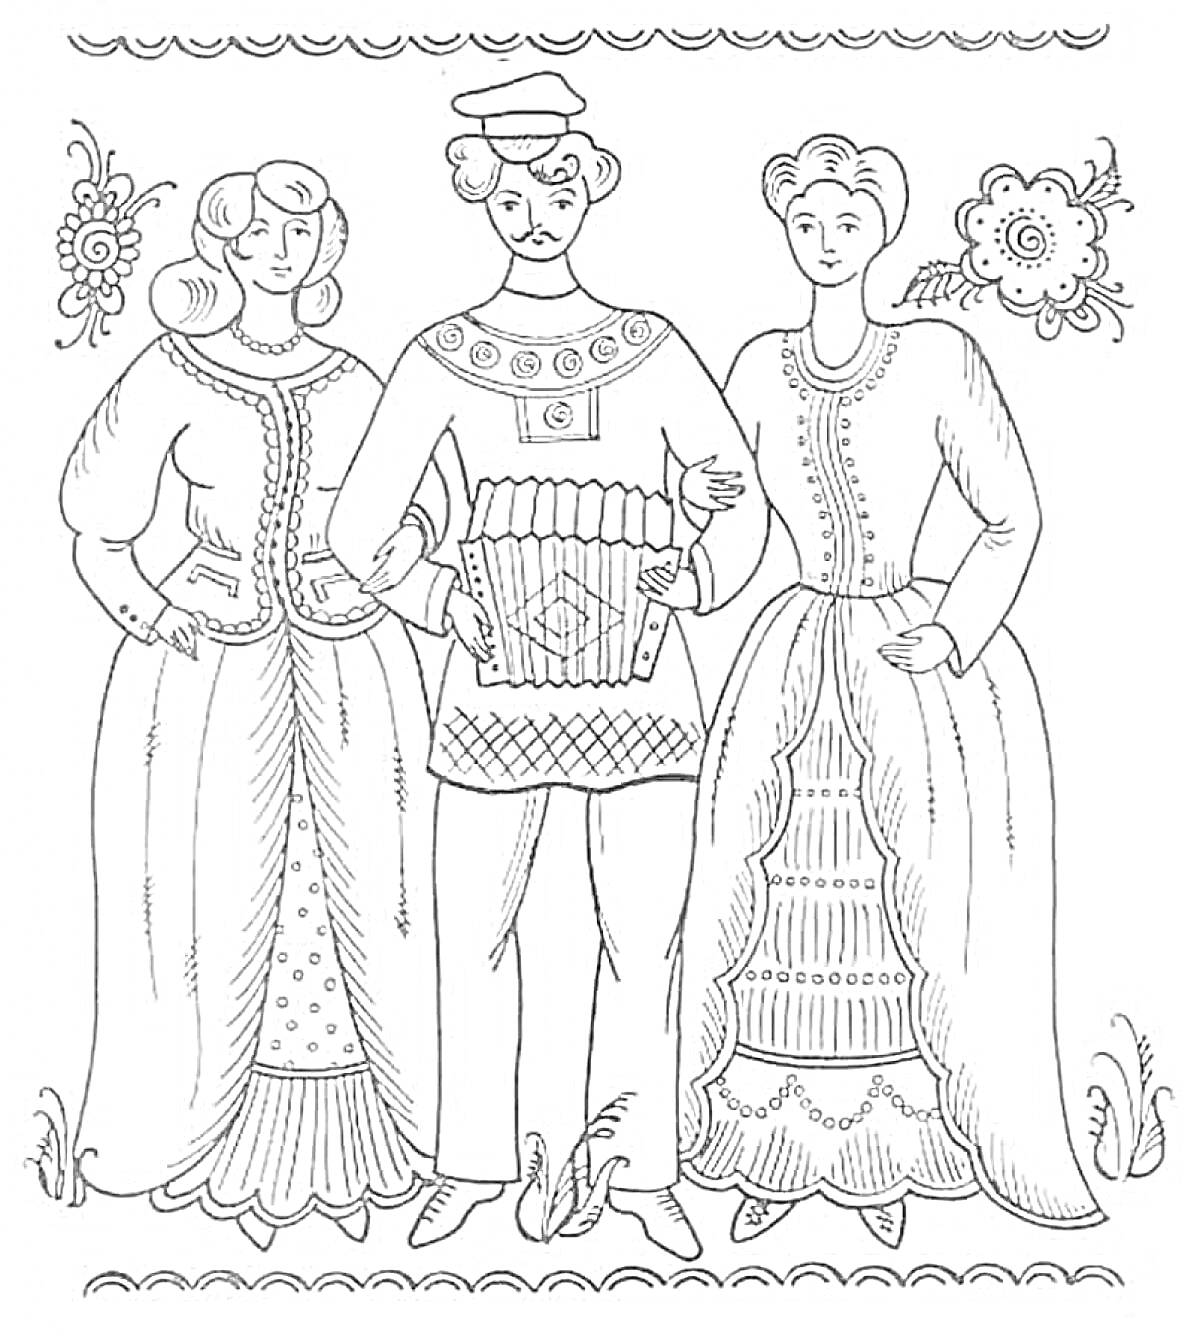 Раскраска Две девушки и парень с гармонью, городецкая роспись, цветочные орнаменты